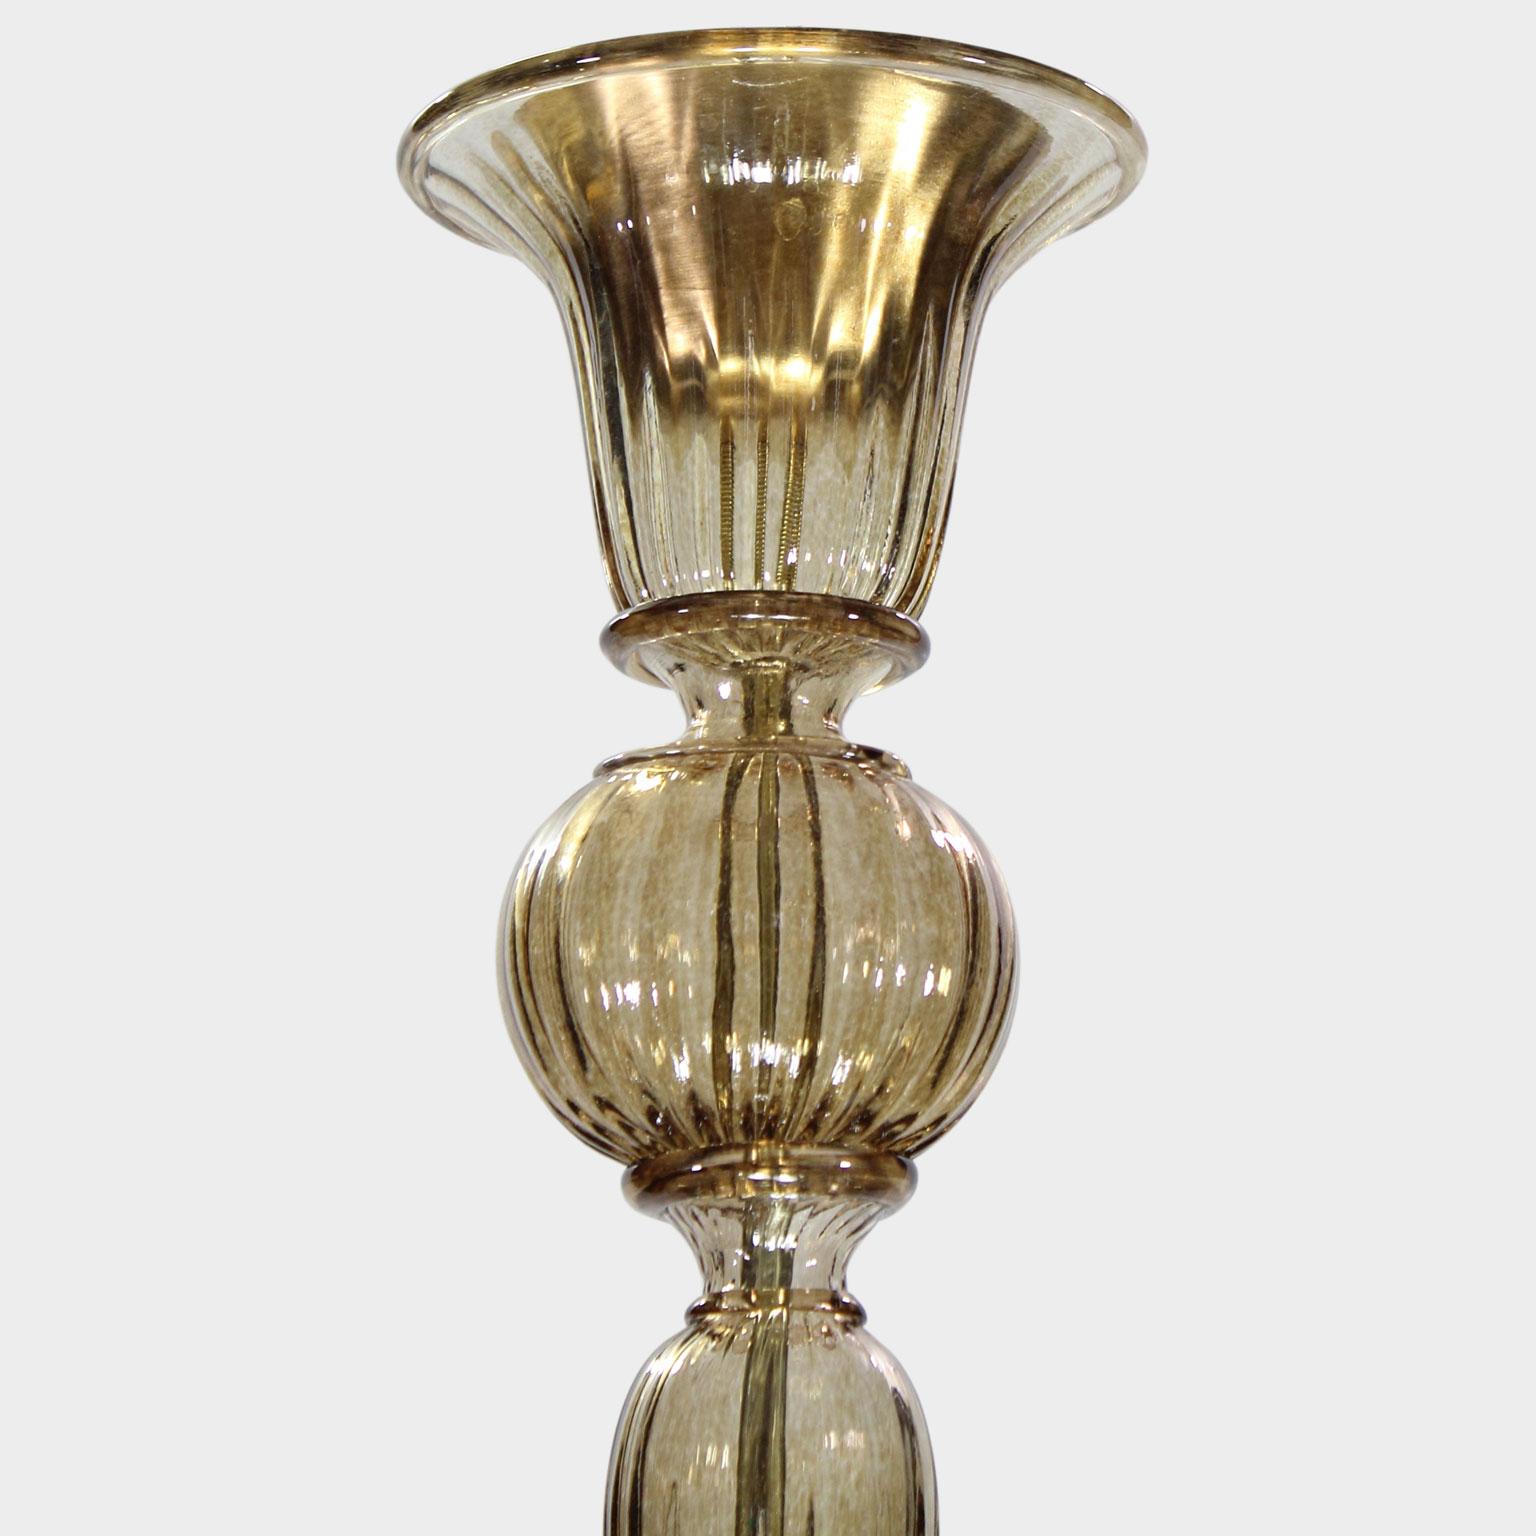 Cette collection en verre de Murano se caractérise par une superbe simplicité. Il est le résultat d'une recherche qui renvoie aux lustres classiques de Murano, dans le but de les réélaborer en termes modernes.
Le lustre Simplicissimus est réalisé